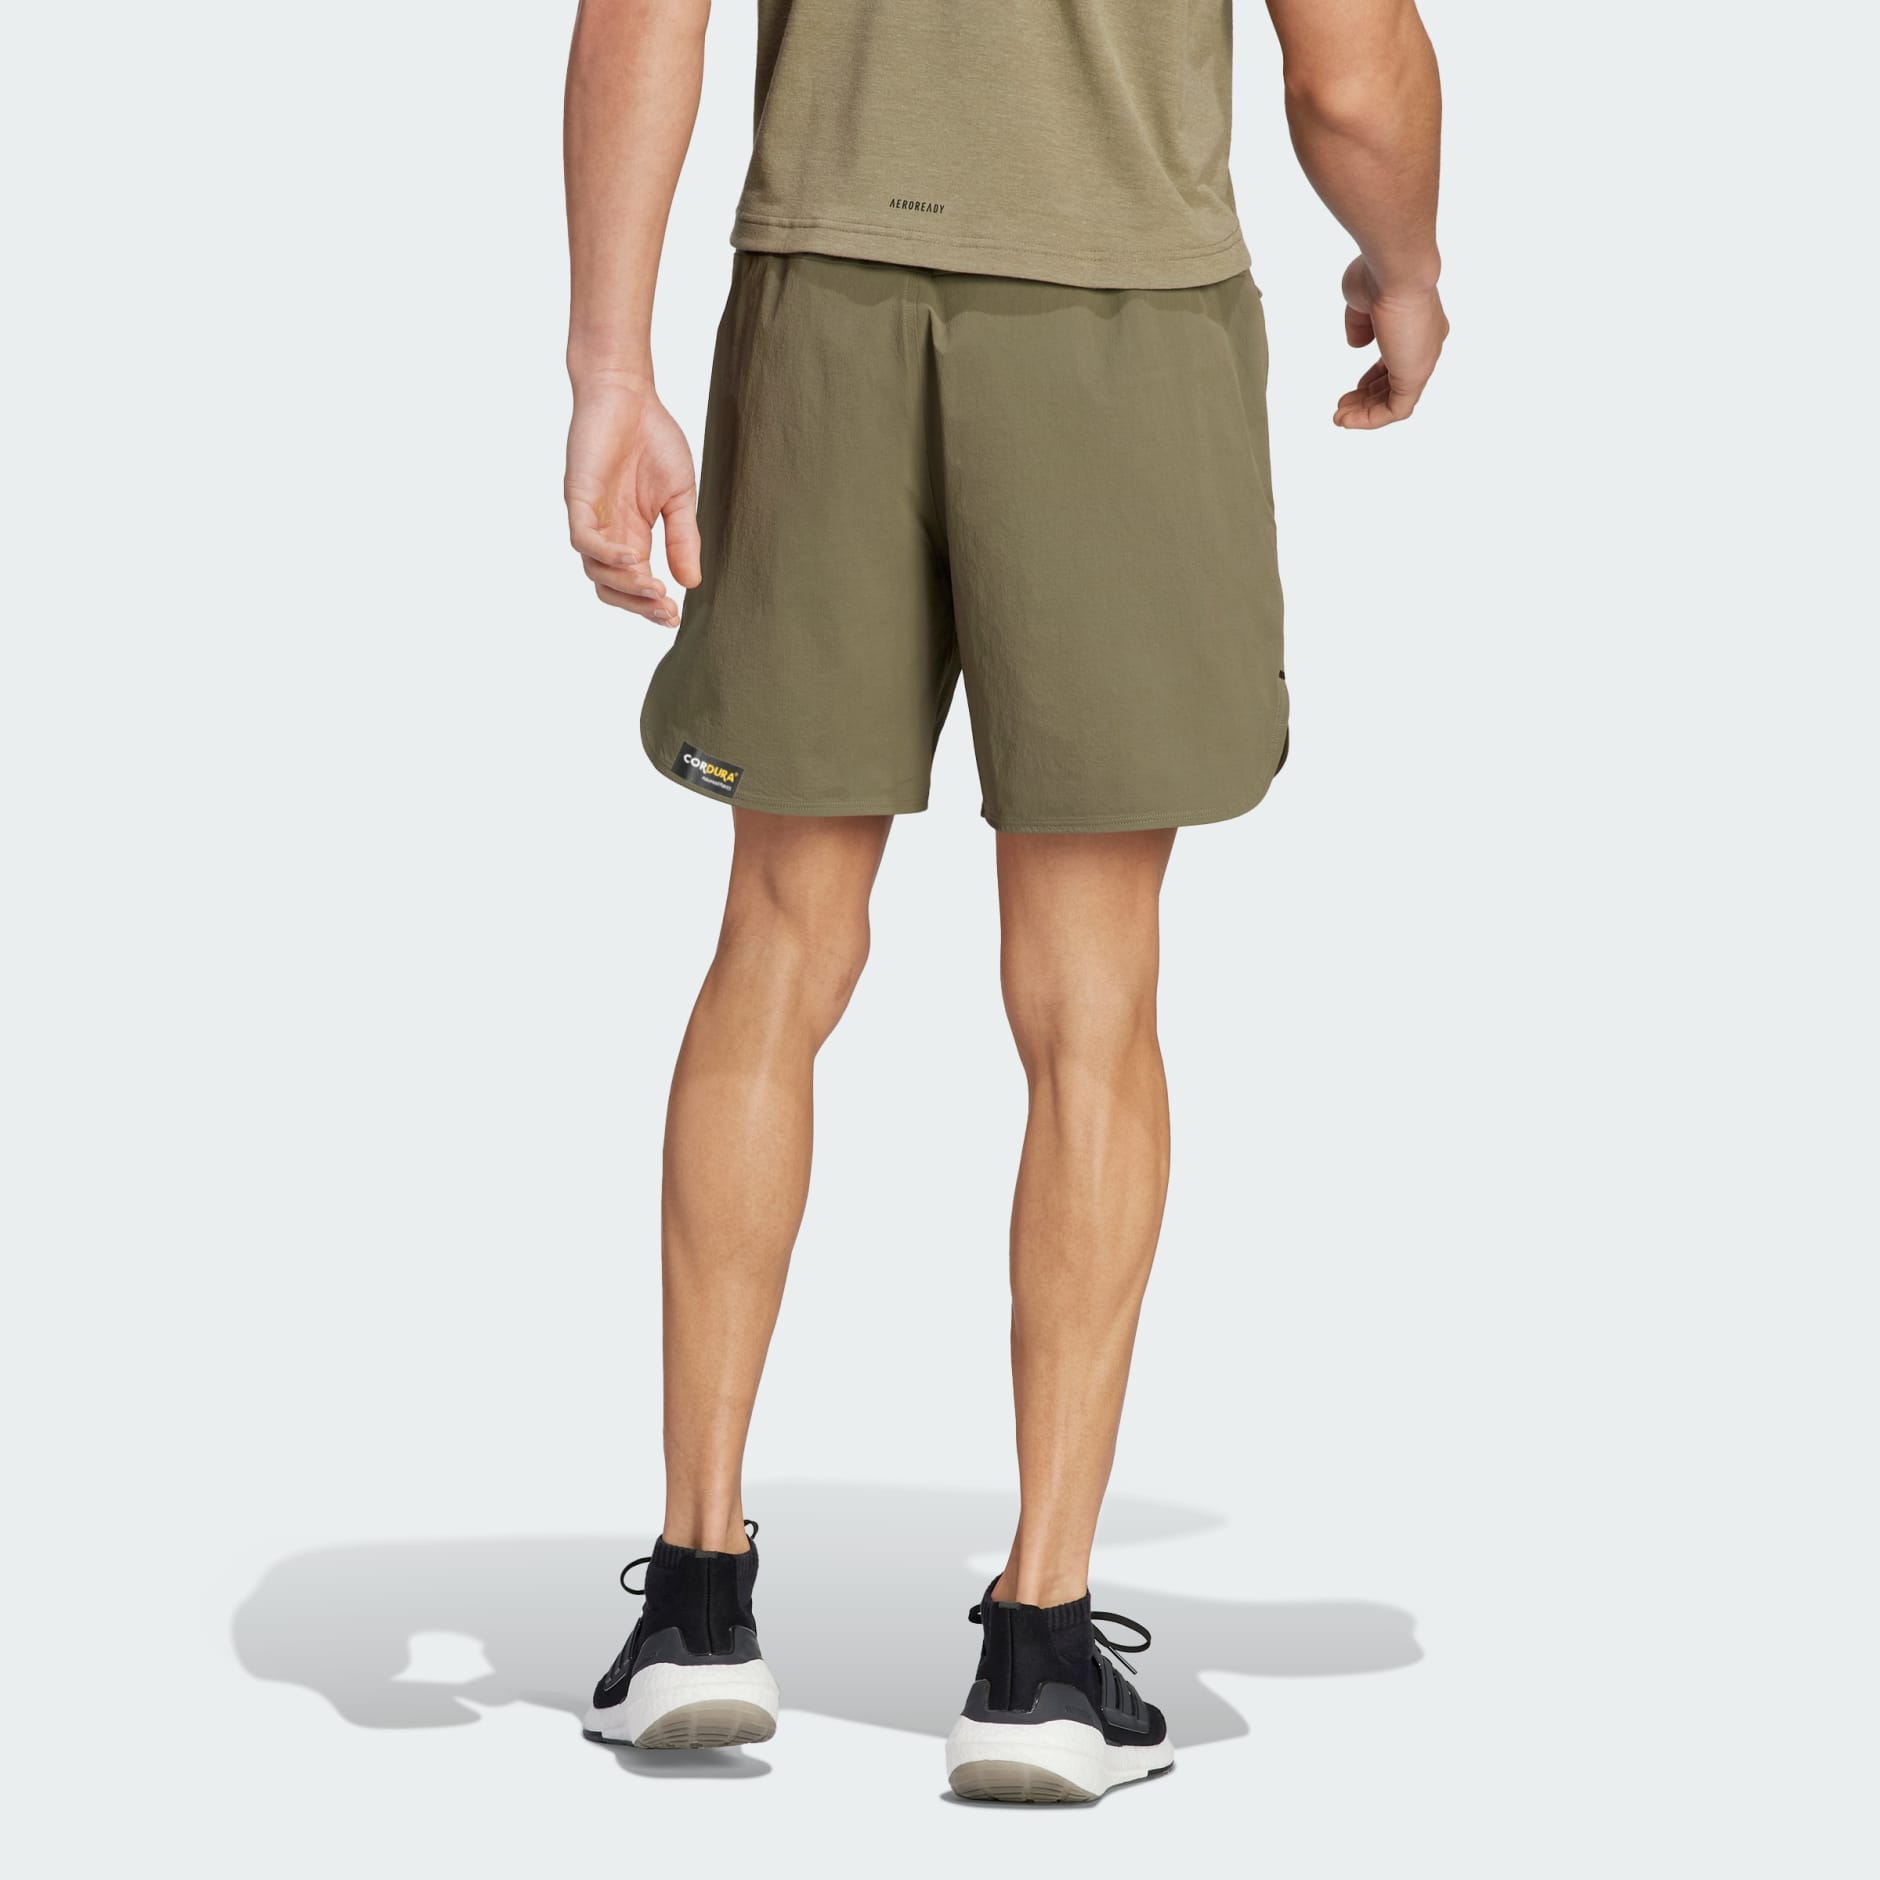 Clothing - Designed 4 Training CORDURA Workout Shorts - Green | adidas ...